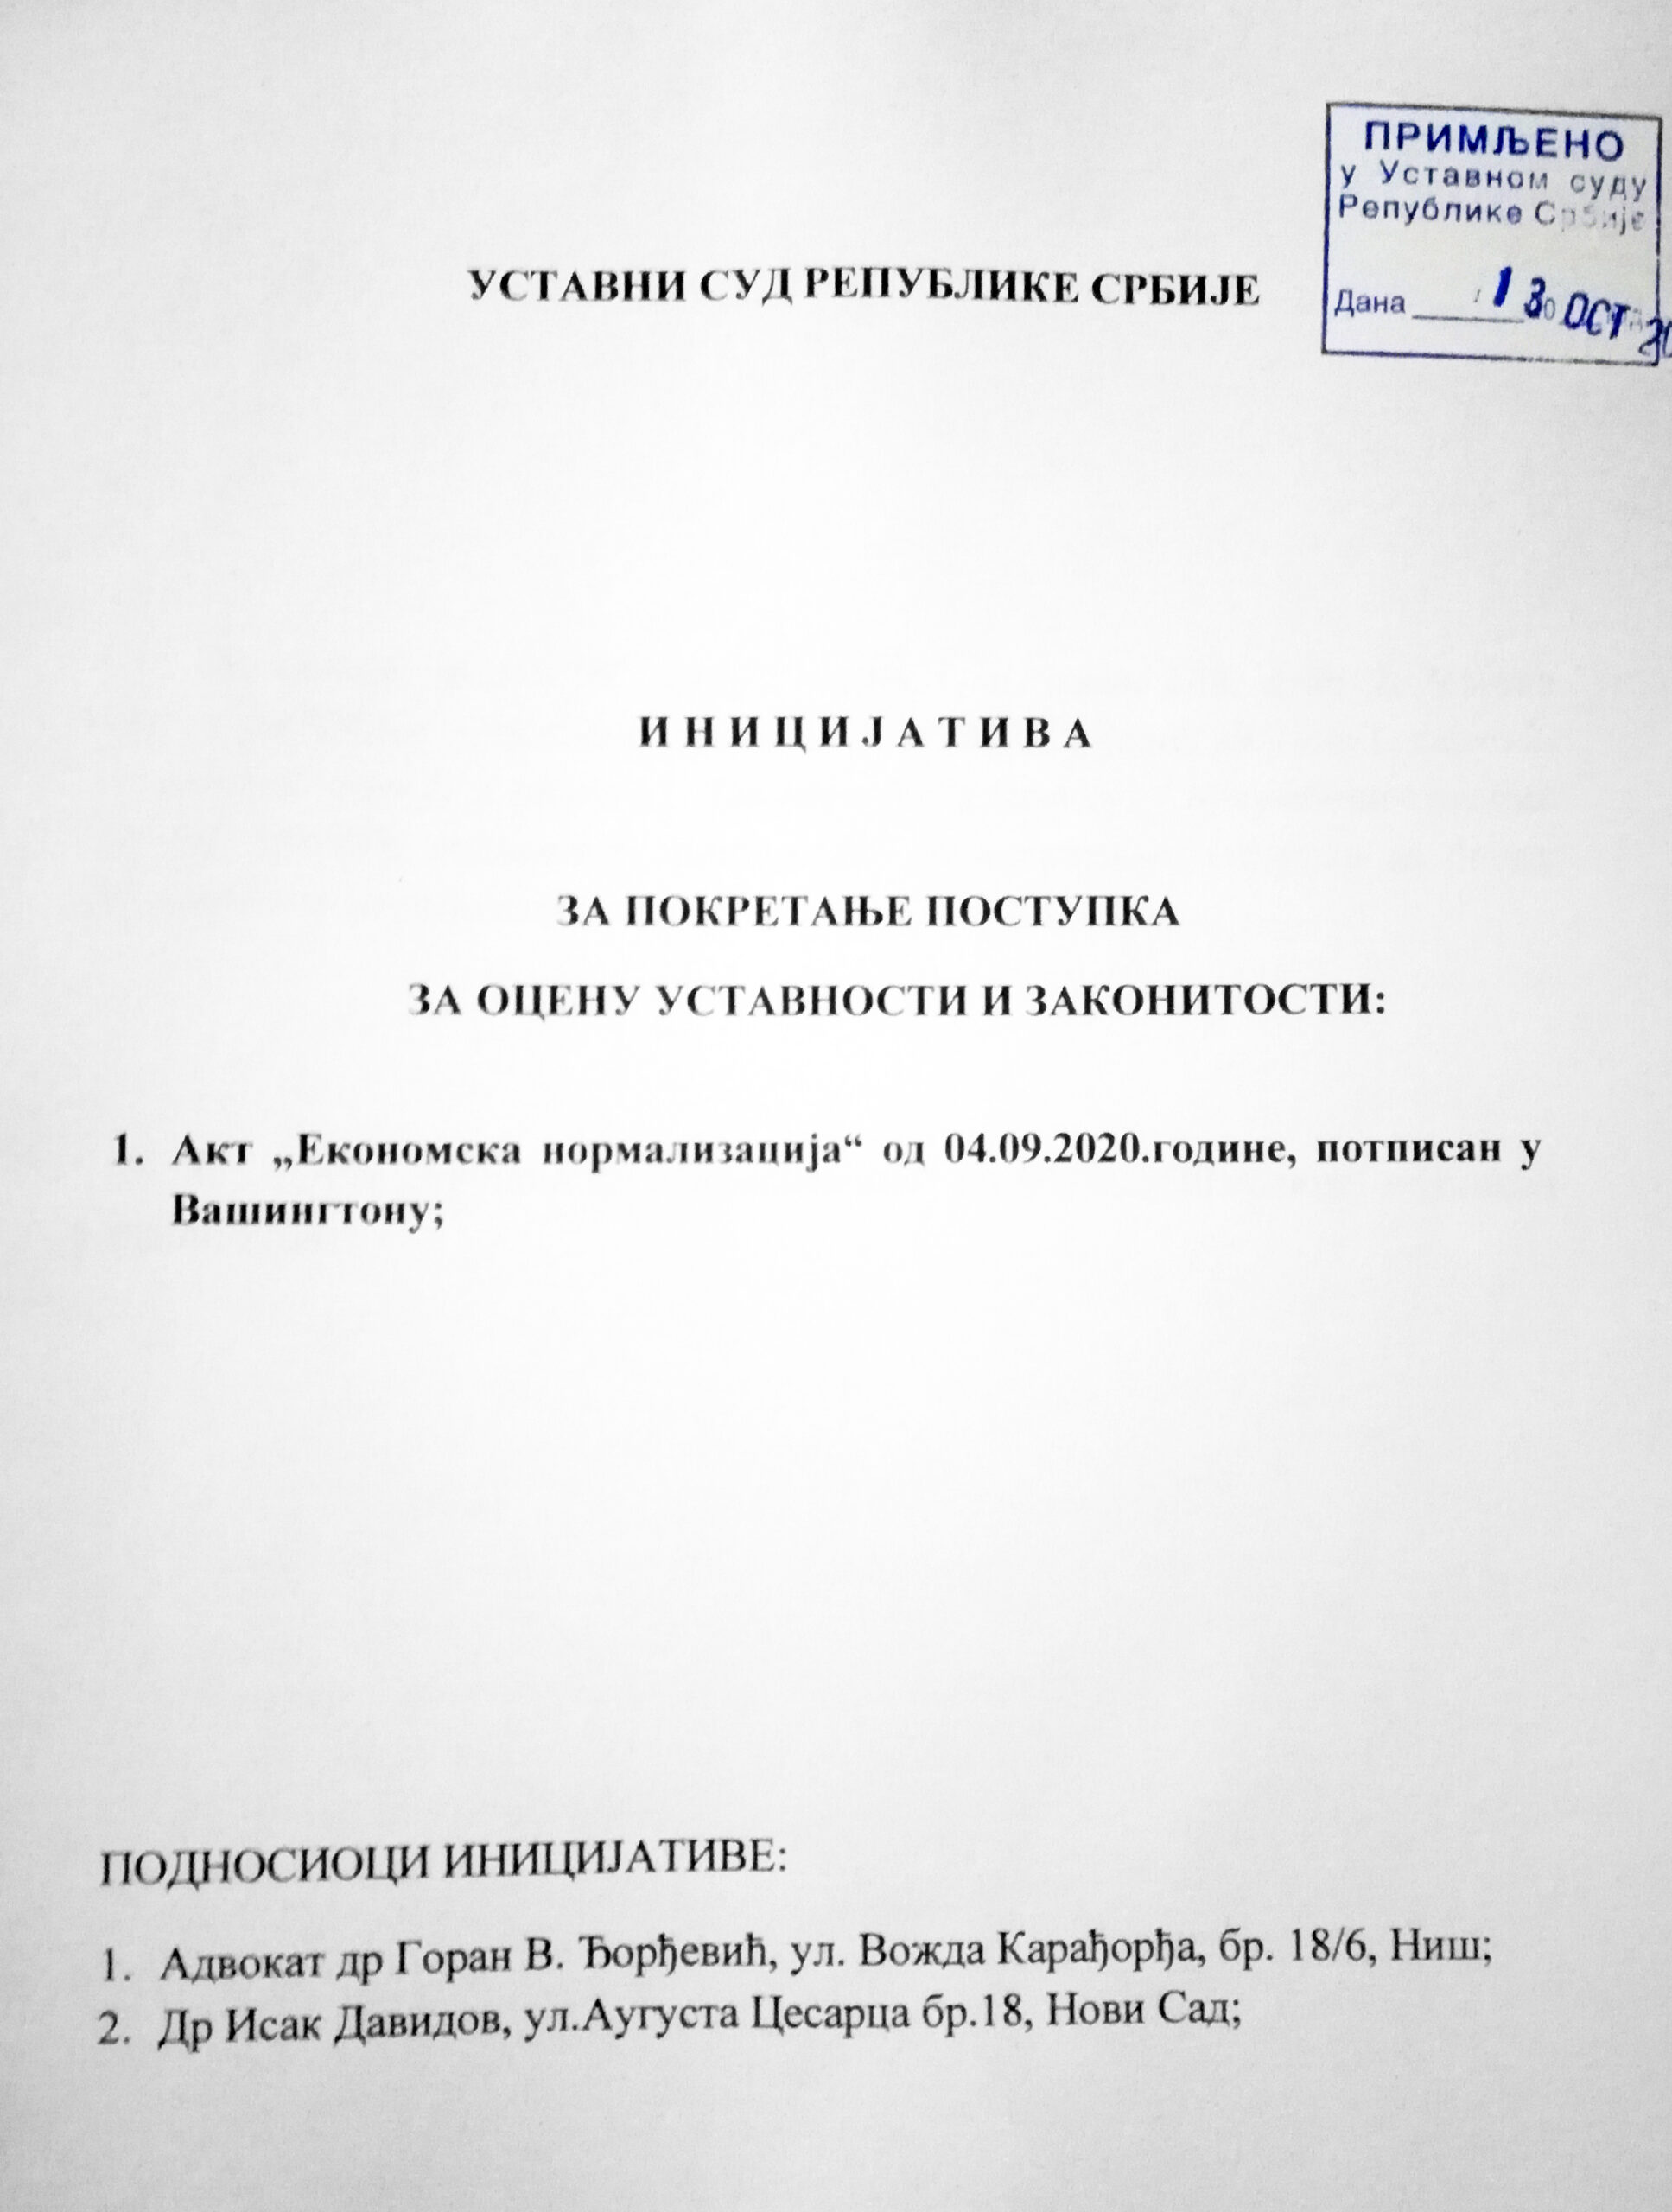 Конституционный суд Сербии рассмотрит законность "Вашингтонских соглашений" Вучича